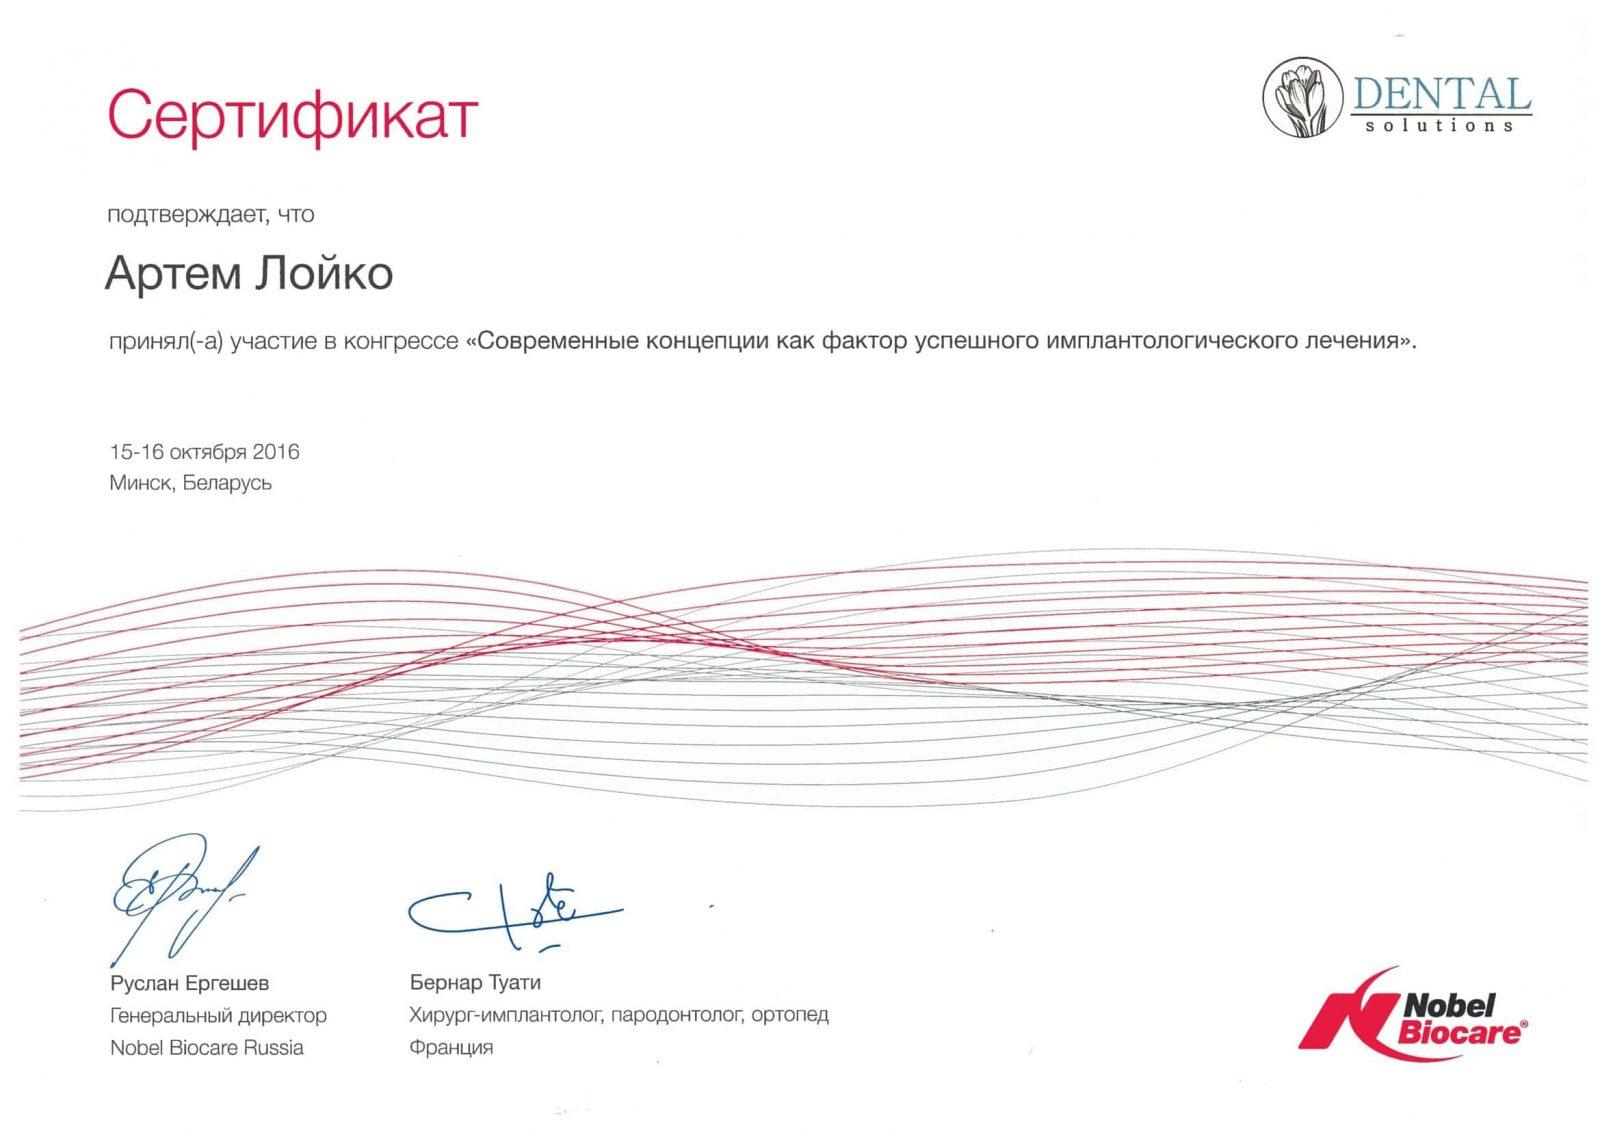 Nach erfolgreichem Abschluss des Kurses wurde Artem Loiko ein Nobel Biocare Zertifikat ausgestellt. Moderne Konzepte als Faktor erfolgreicher Implantatbehandlung.